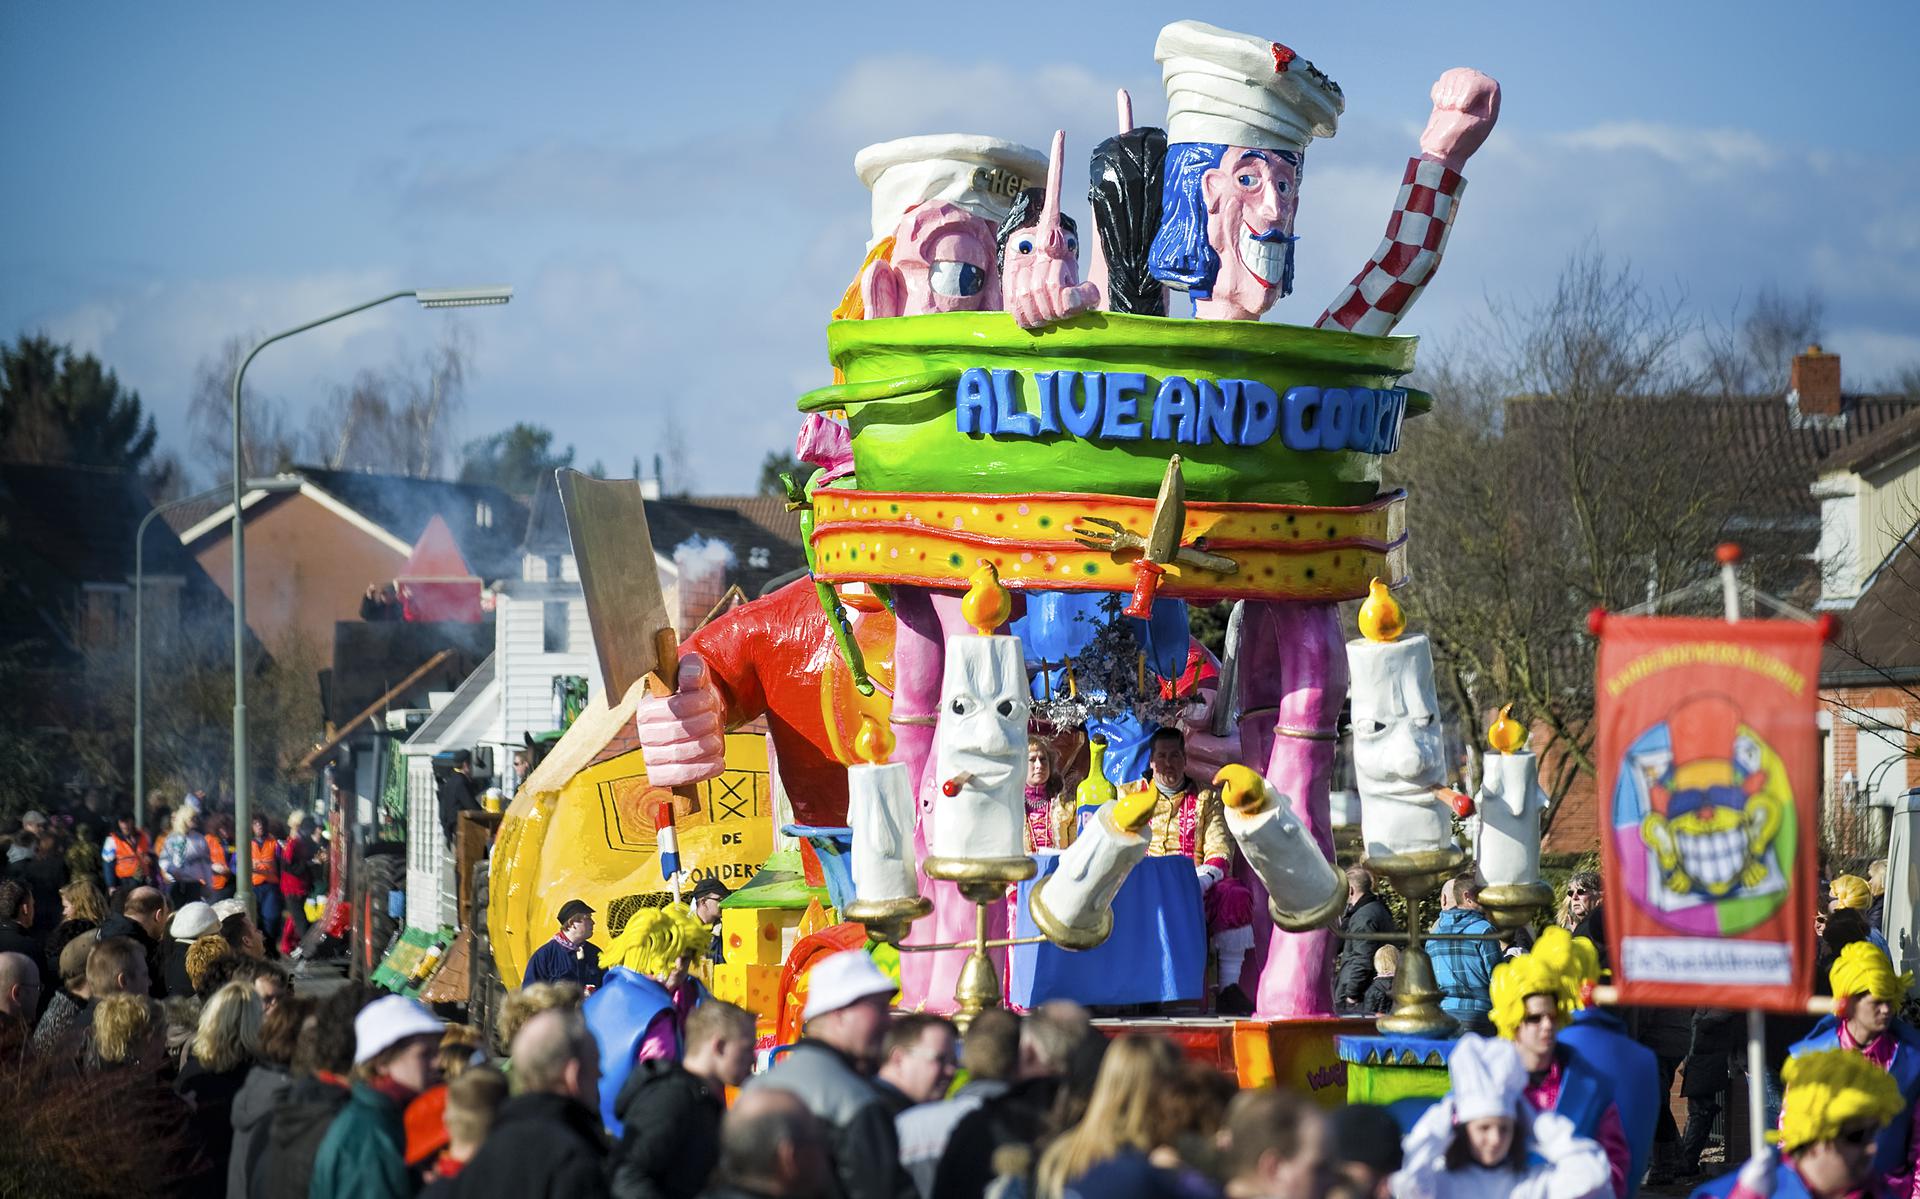 Al een halve eeuw een begrip in Barger-Oosterveld: de carnavalsoptocht.